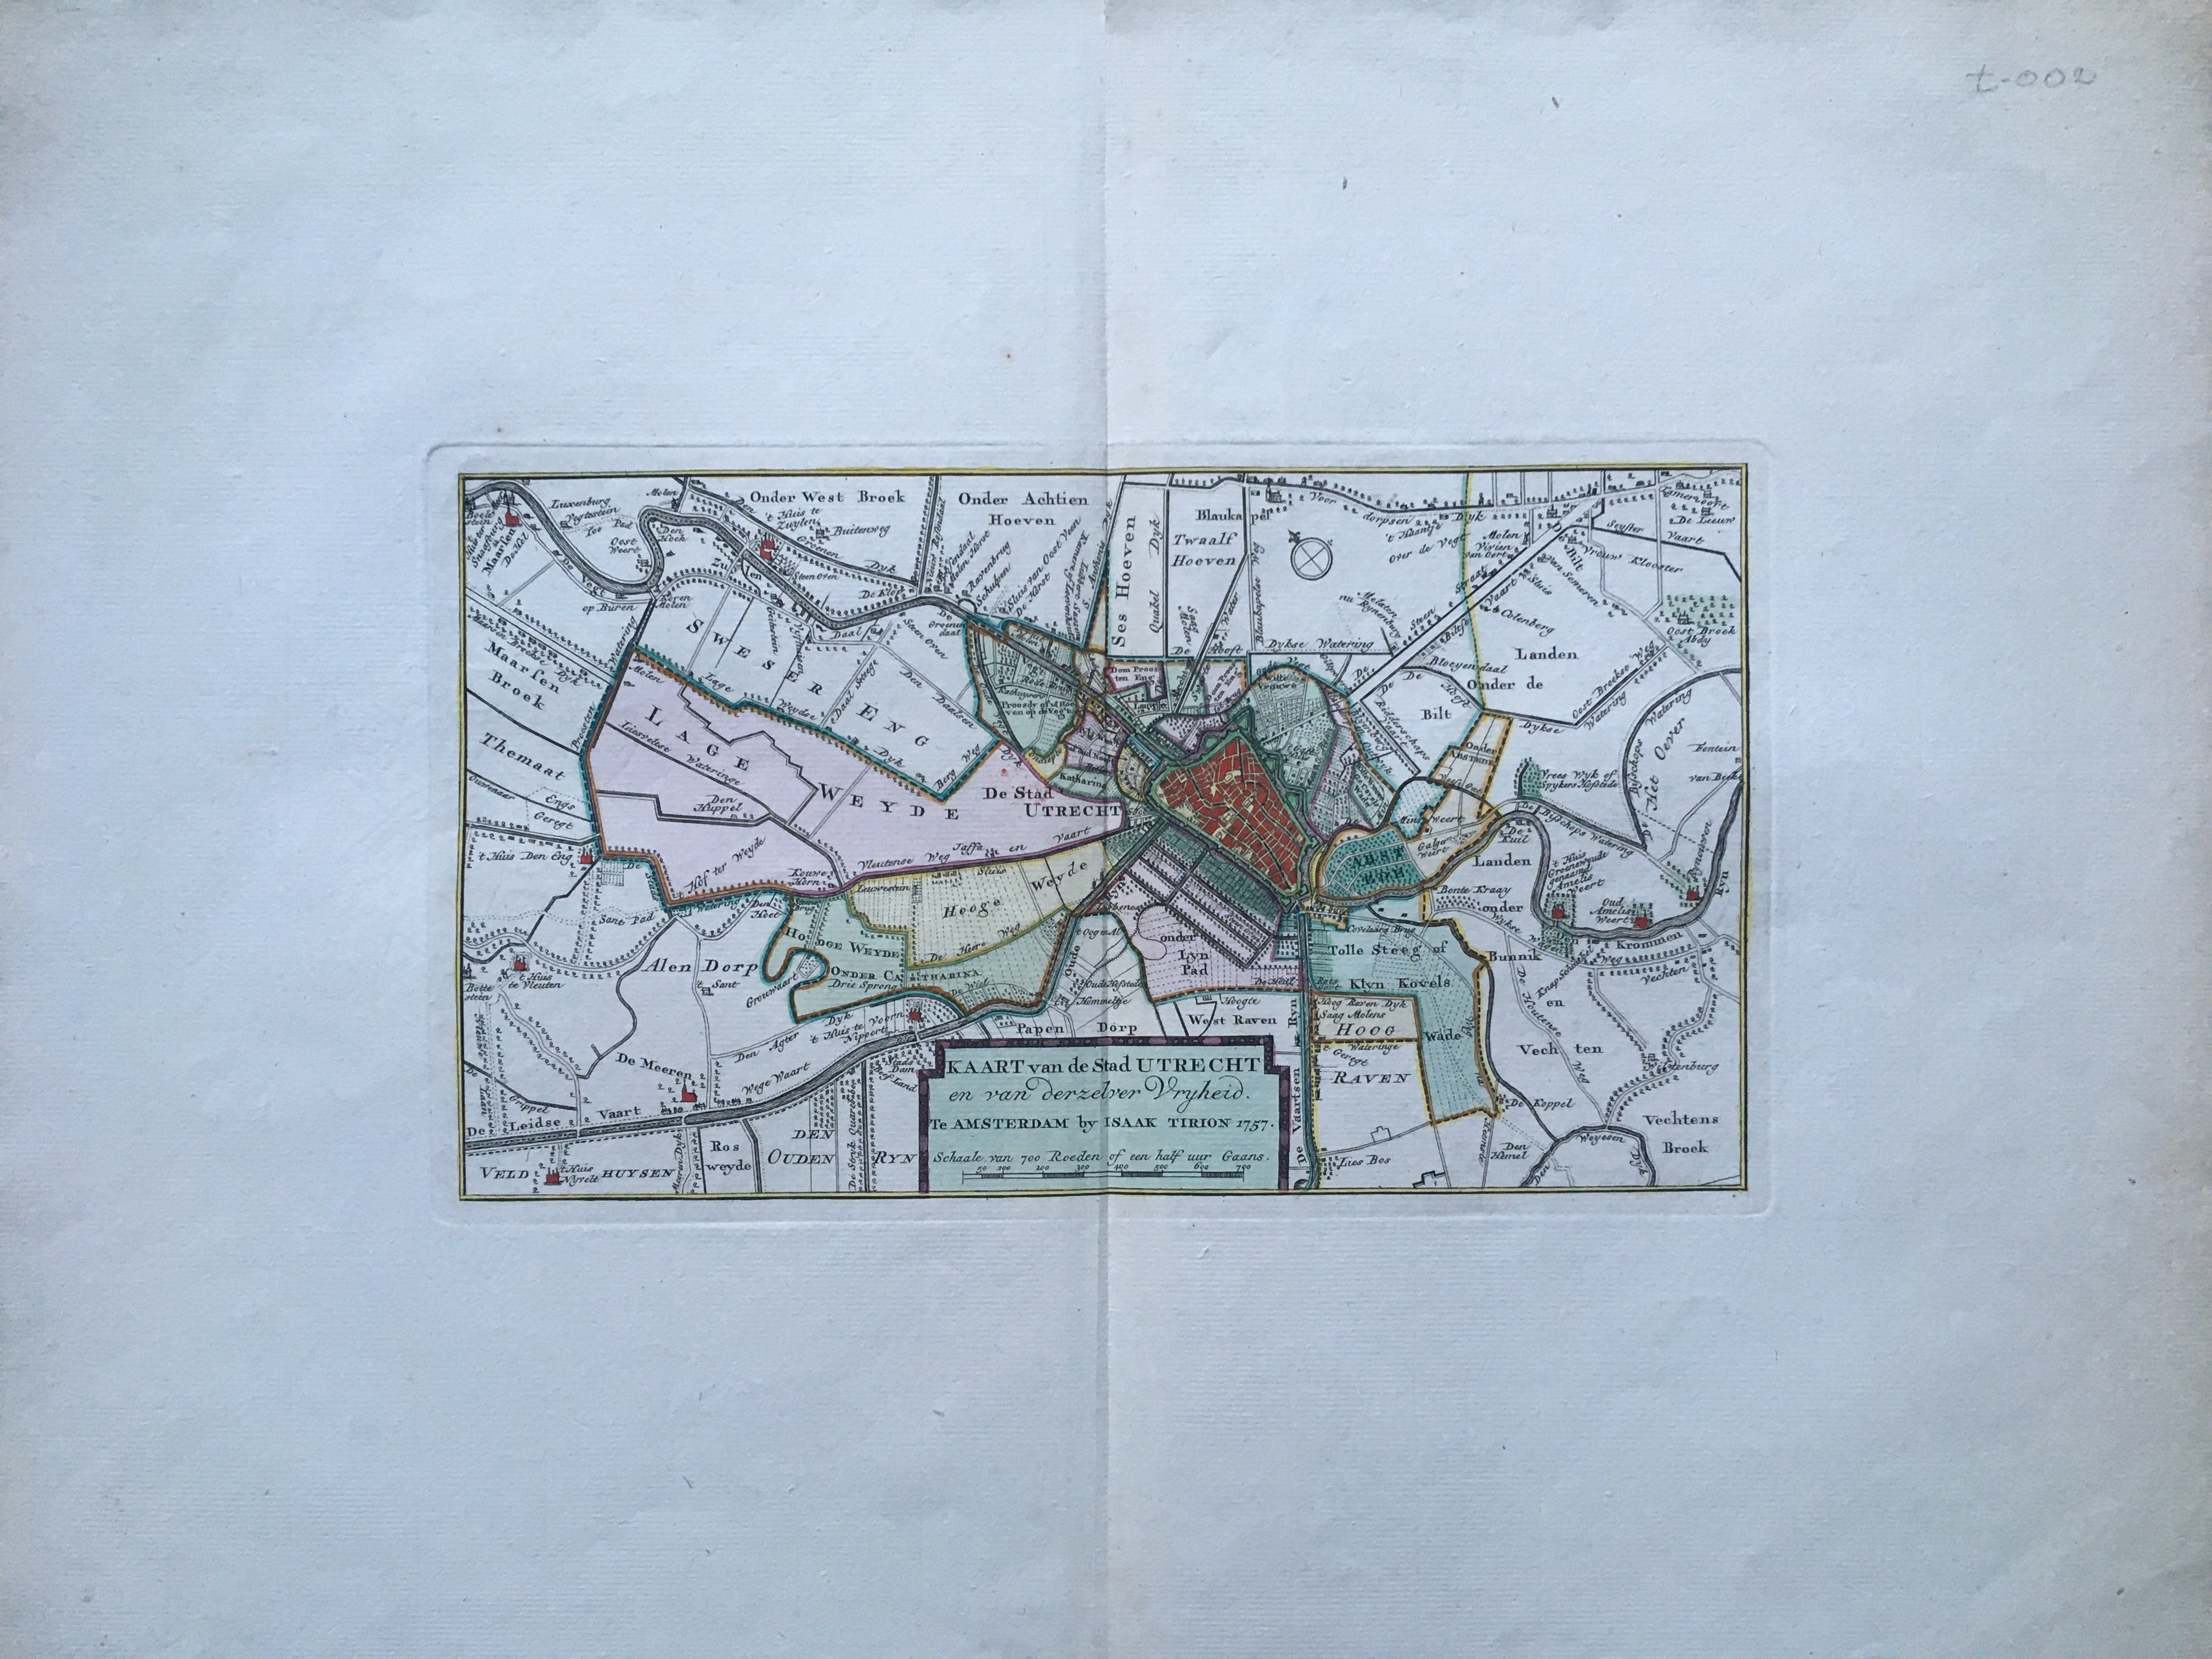 Kaart van de Stad Utrecht 'en van derzelver vrijheid' - 1757